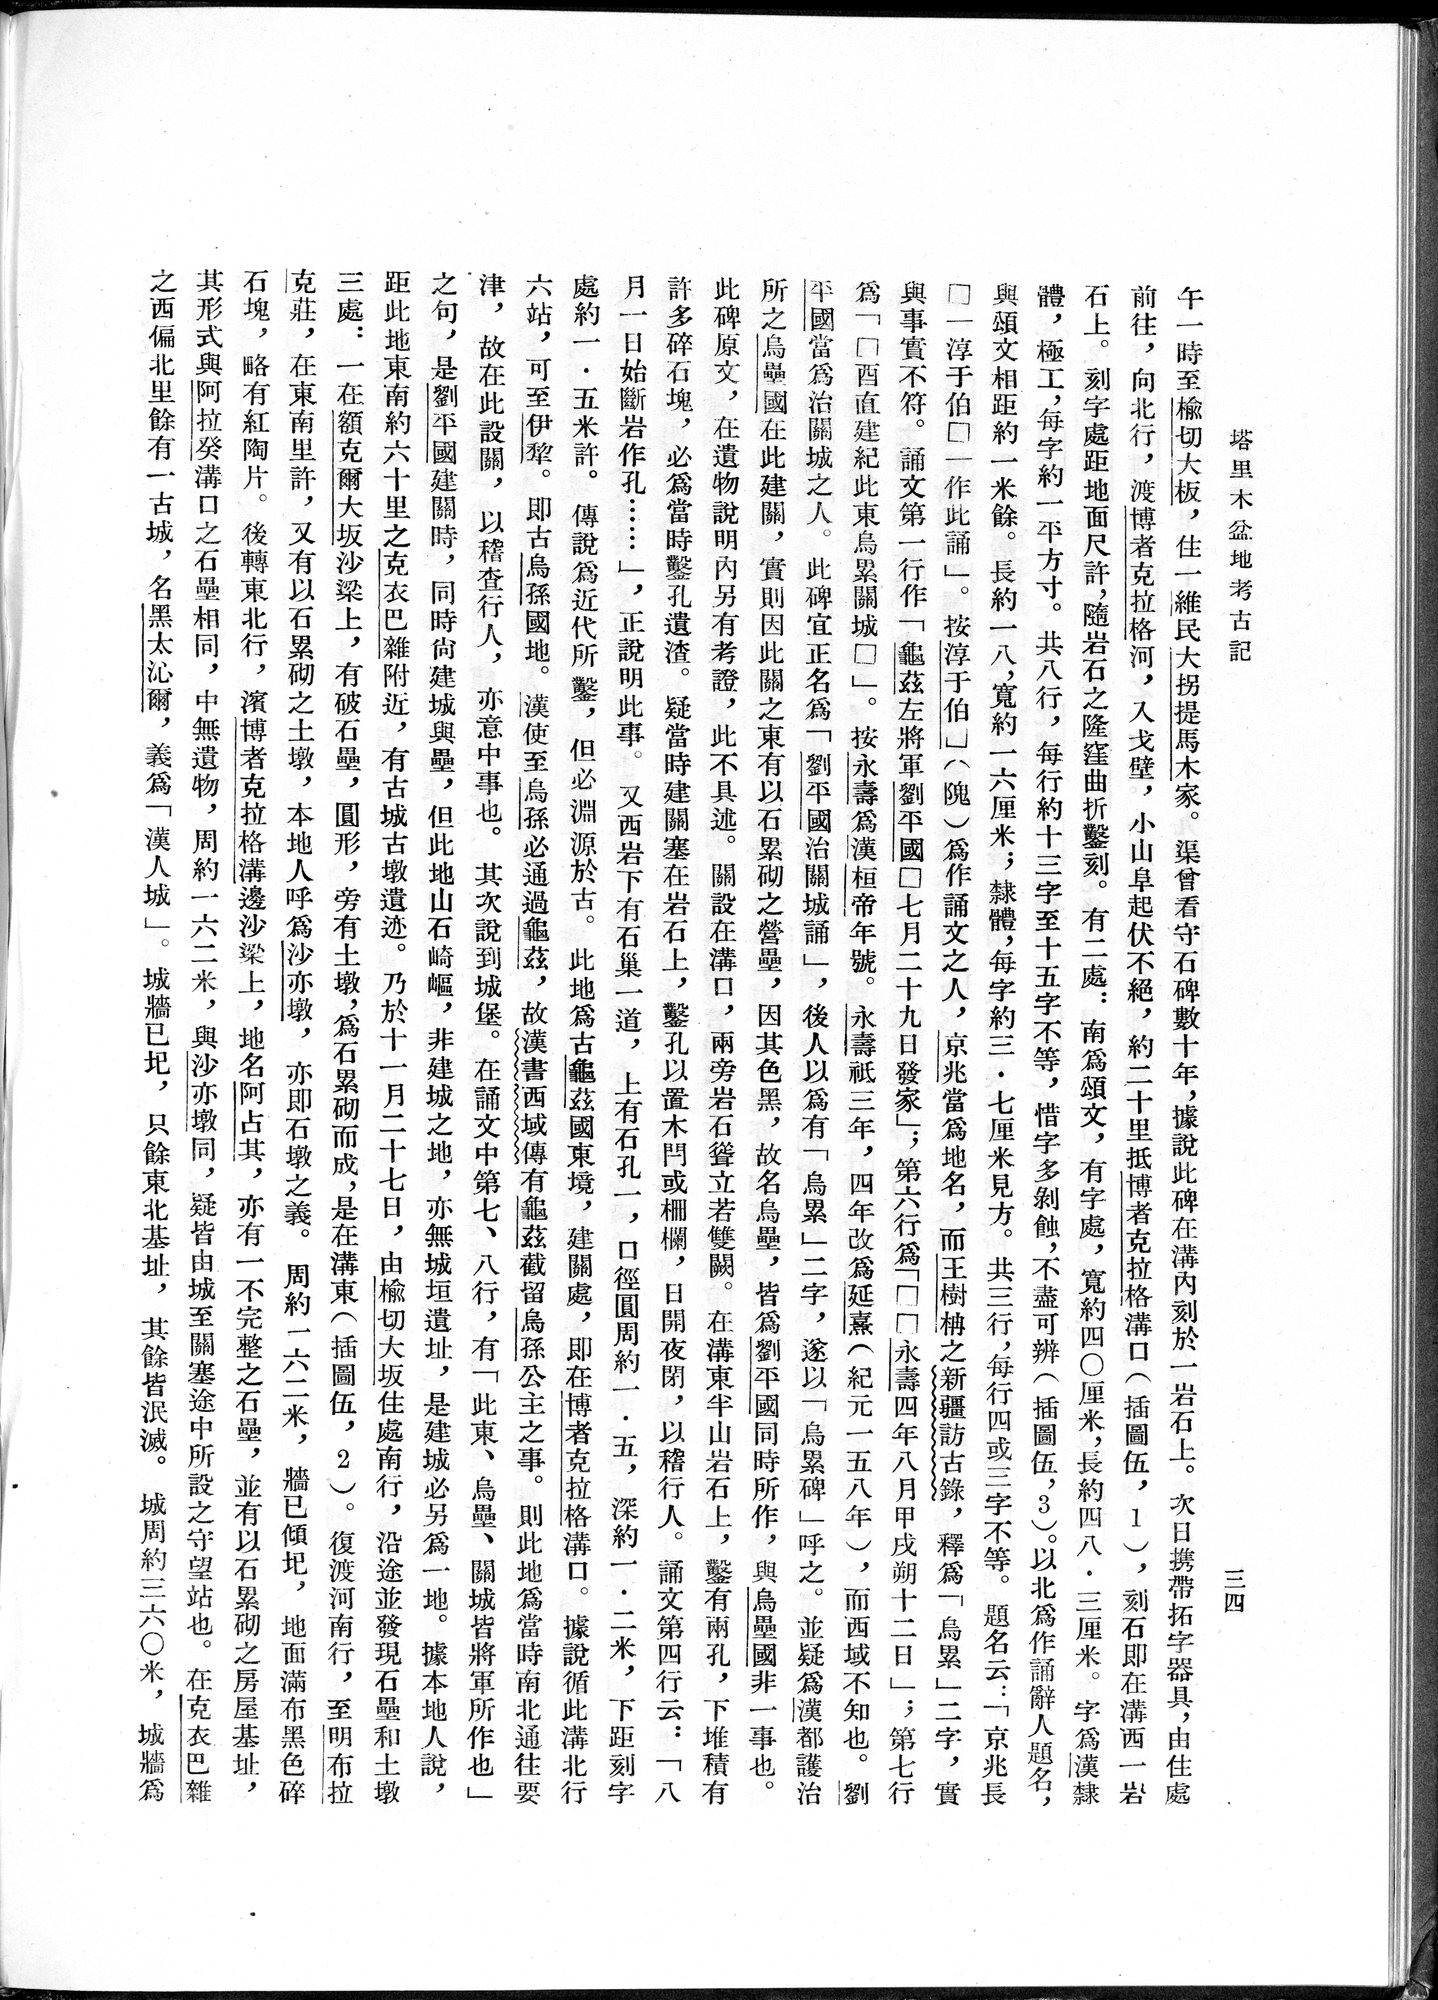 塔里木盆地考古記 : vol.1 / Page 58 (Grayscale High Resolution Image)